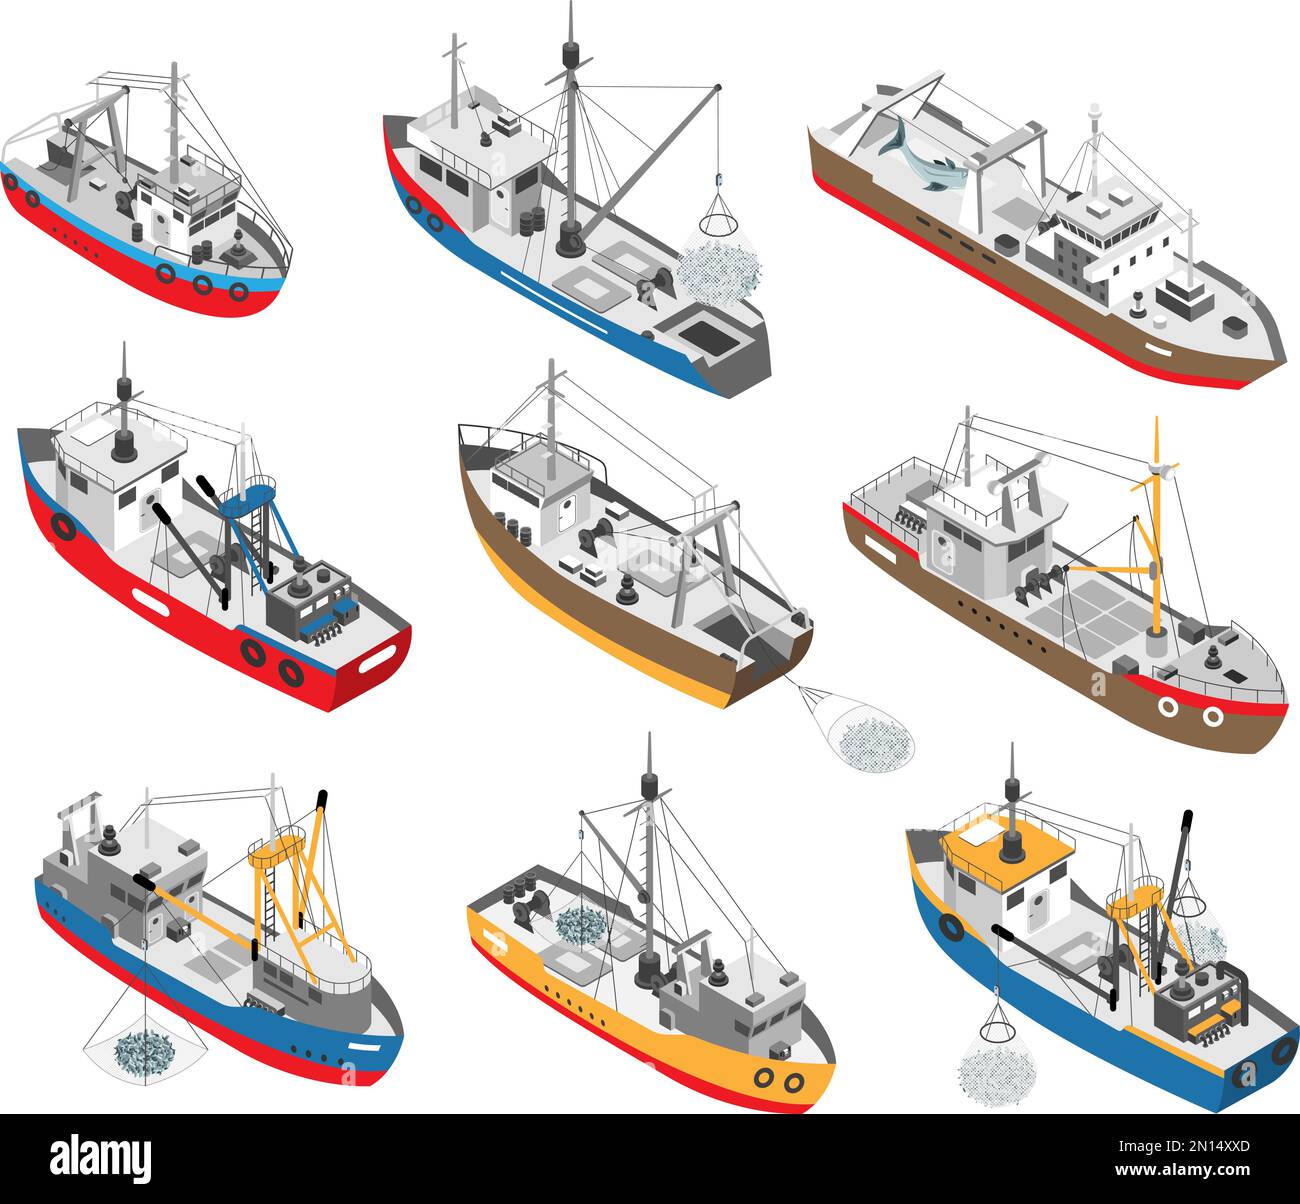 Ensemble isométrique de différents bateaux de pêche commerciale colorés avec filets illustration vectorielle isolée Illustration de Vecteur